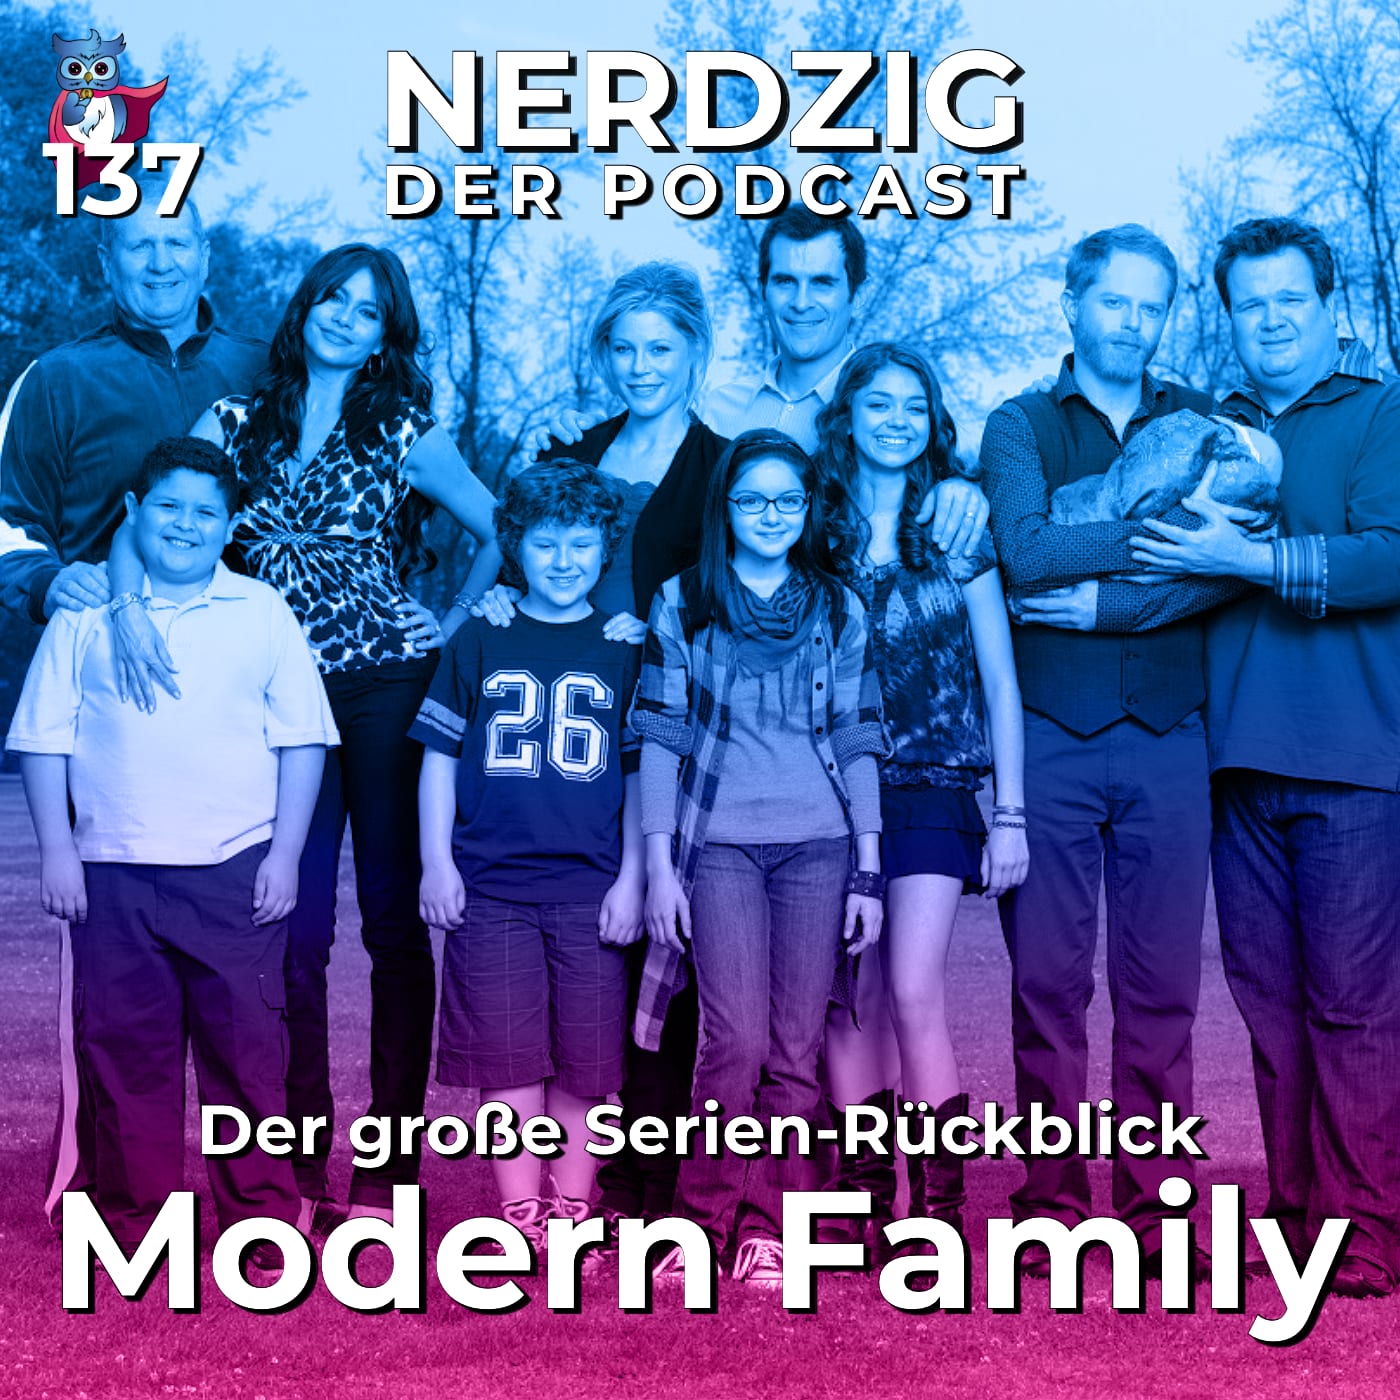 Nerdzig - Der Podcast #137 – Modern Family: Der Serienrückblick